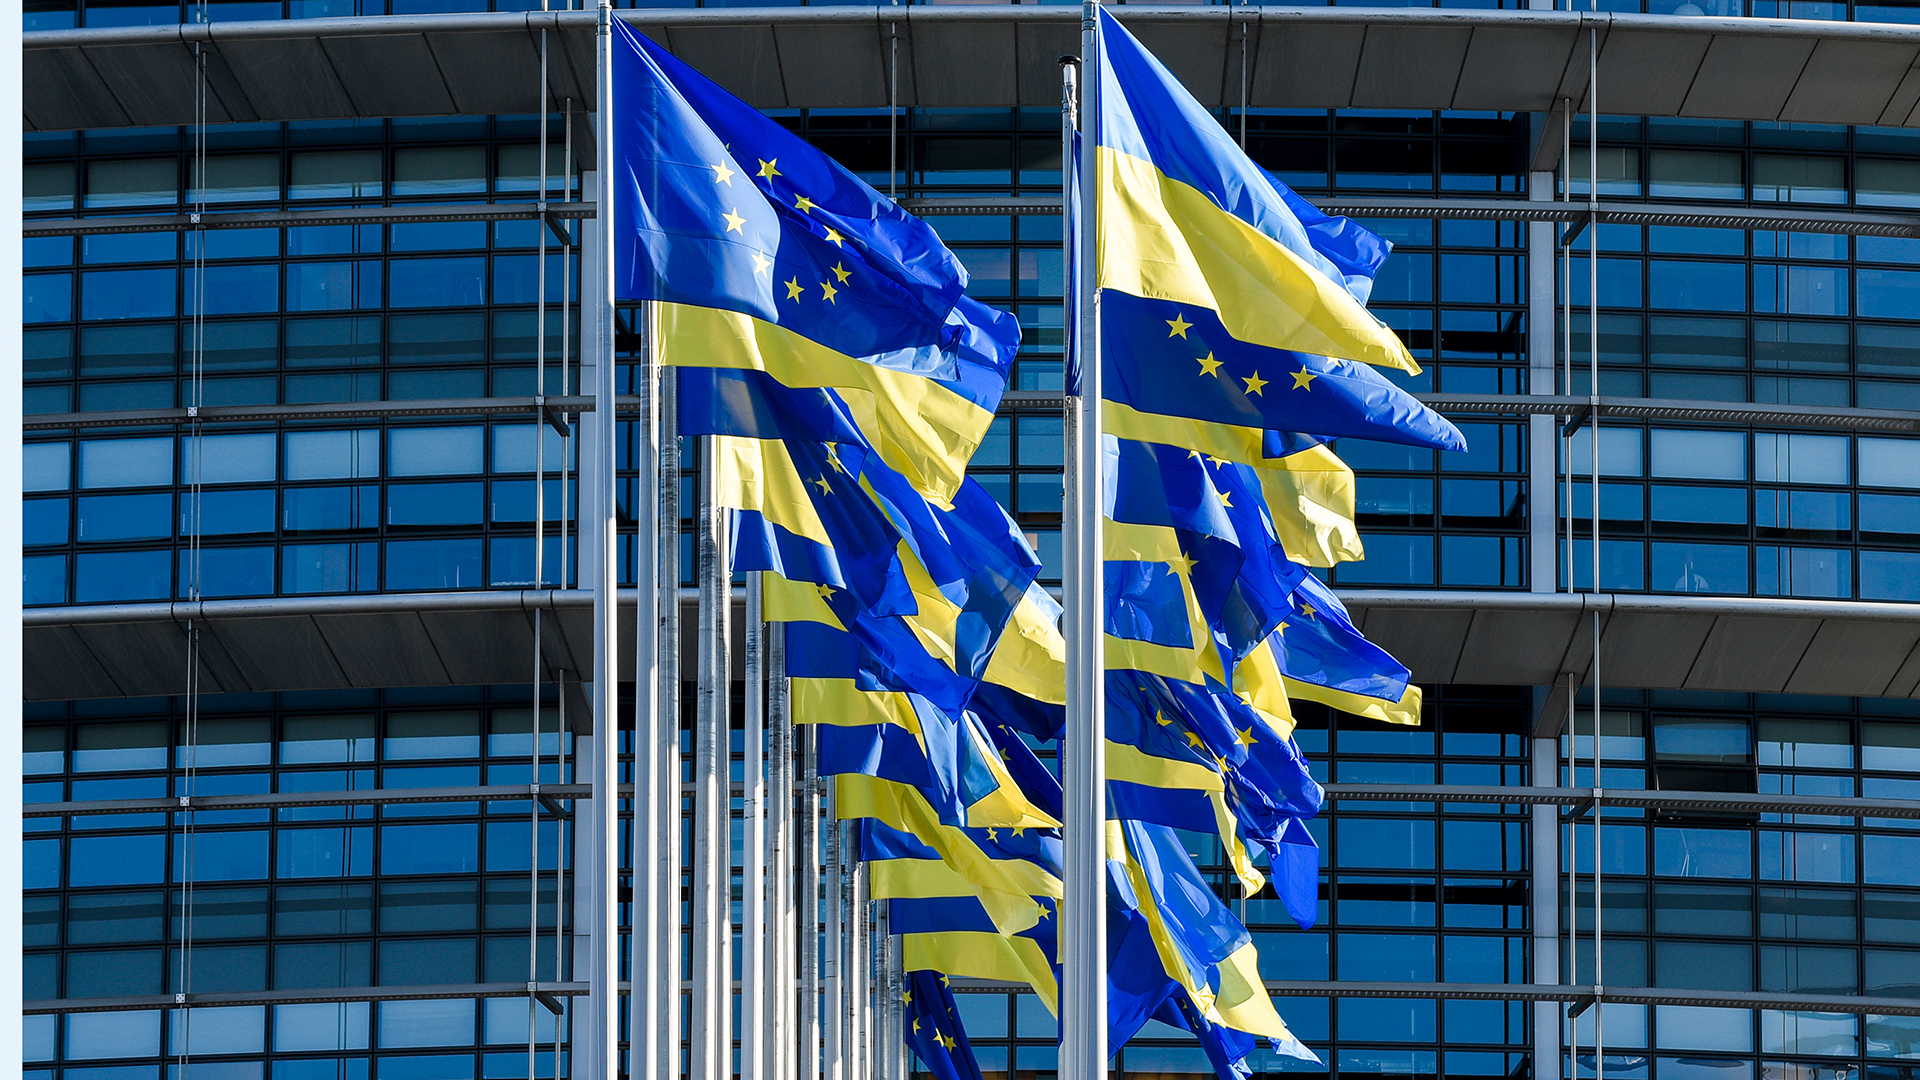 Flaggen der Europäischen Union und der Ukraine. | dpa